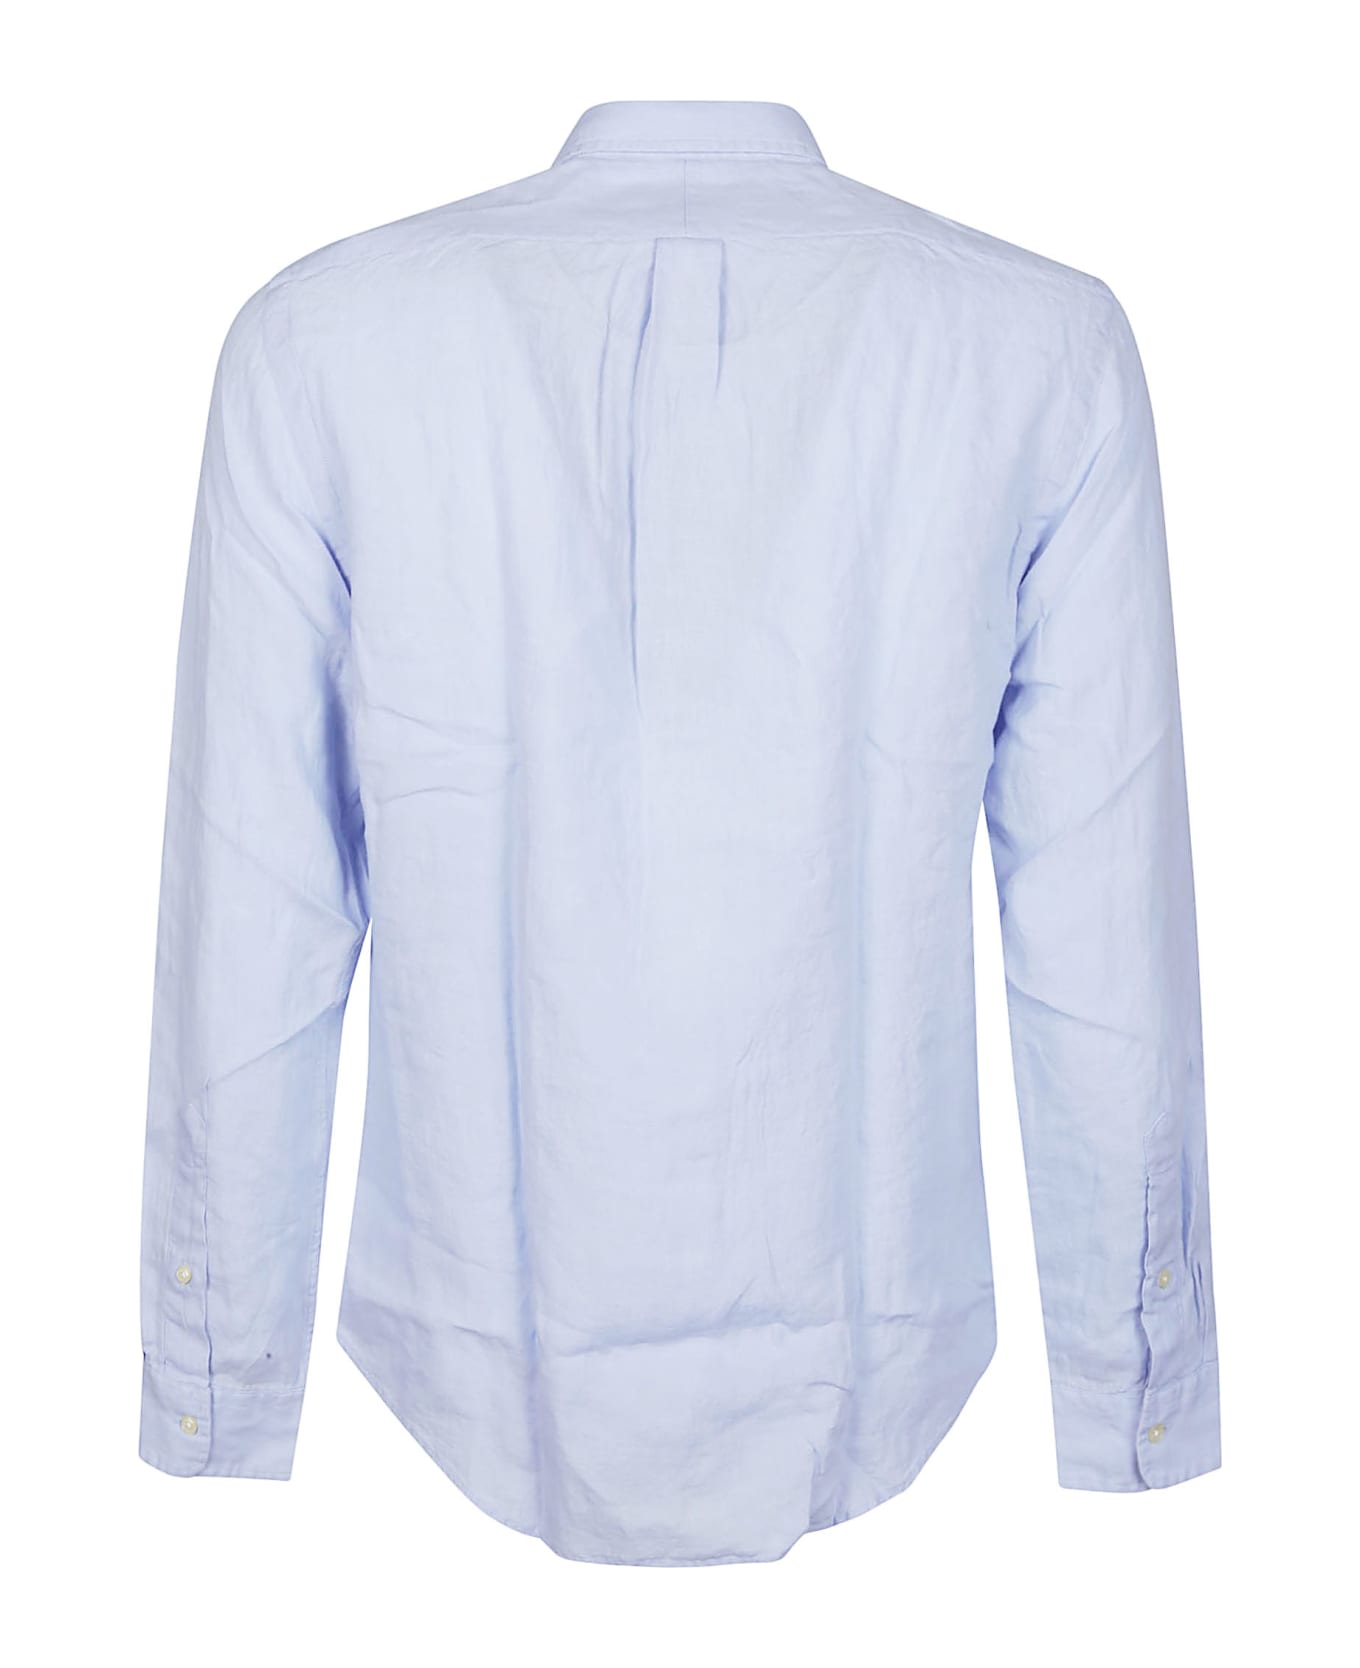 Polo Ralph Lauren Long Sleeve Sport Shirt - Blue Hyacinth